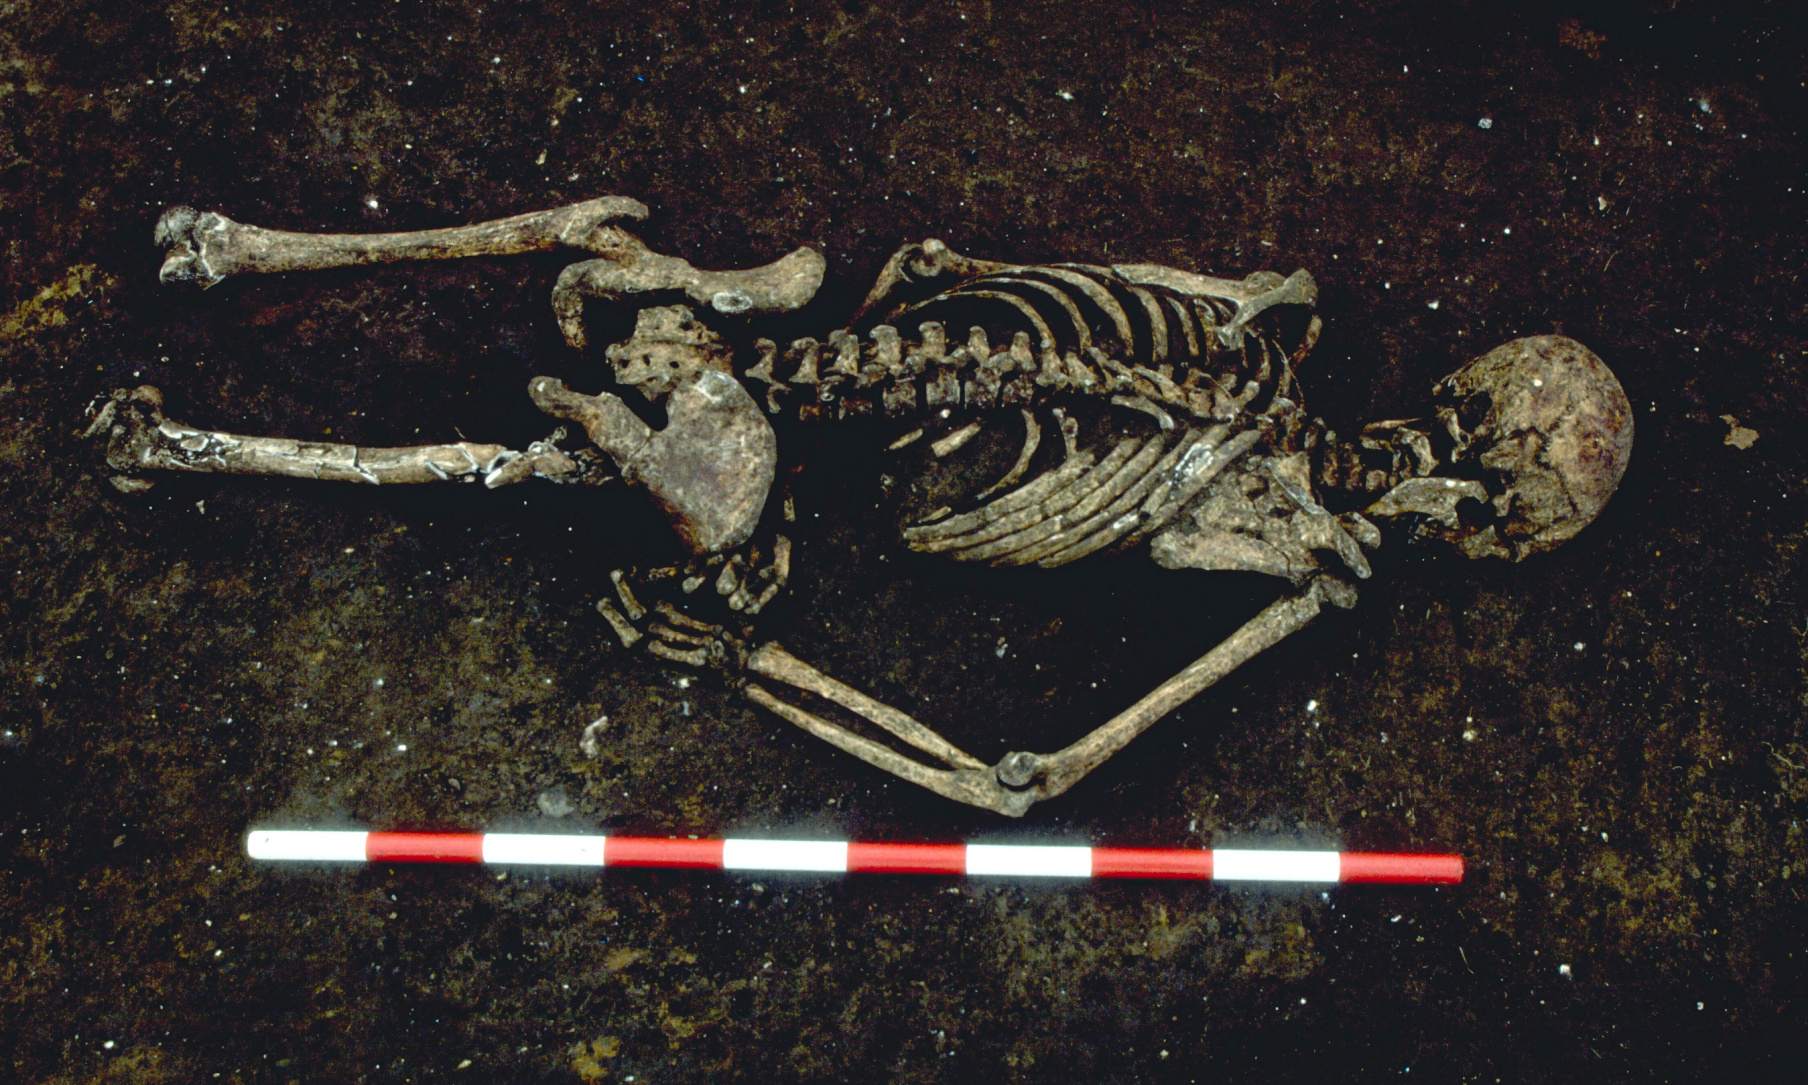 1,500 let stará kostra byla nalezena obličejem dolů s pravou paží ohnutou v neobvyklém úhlu. Výzkumníci tvrdí, že mohl být svázán, když zemřel. Jeho spodní část těla byla zničena novodobým vývojem.